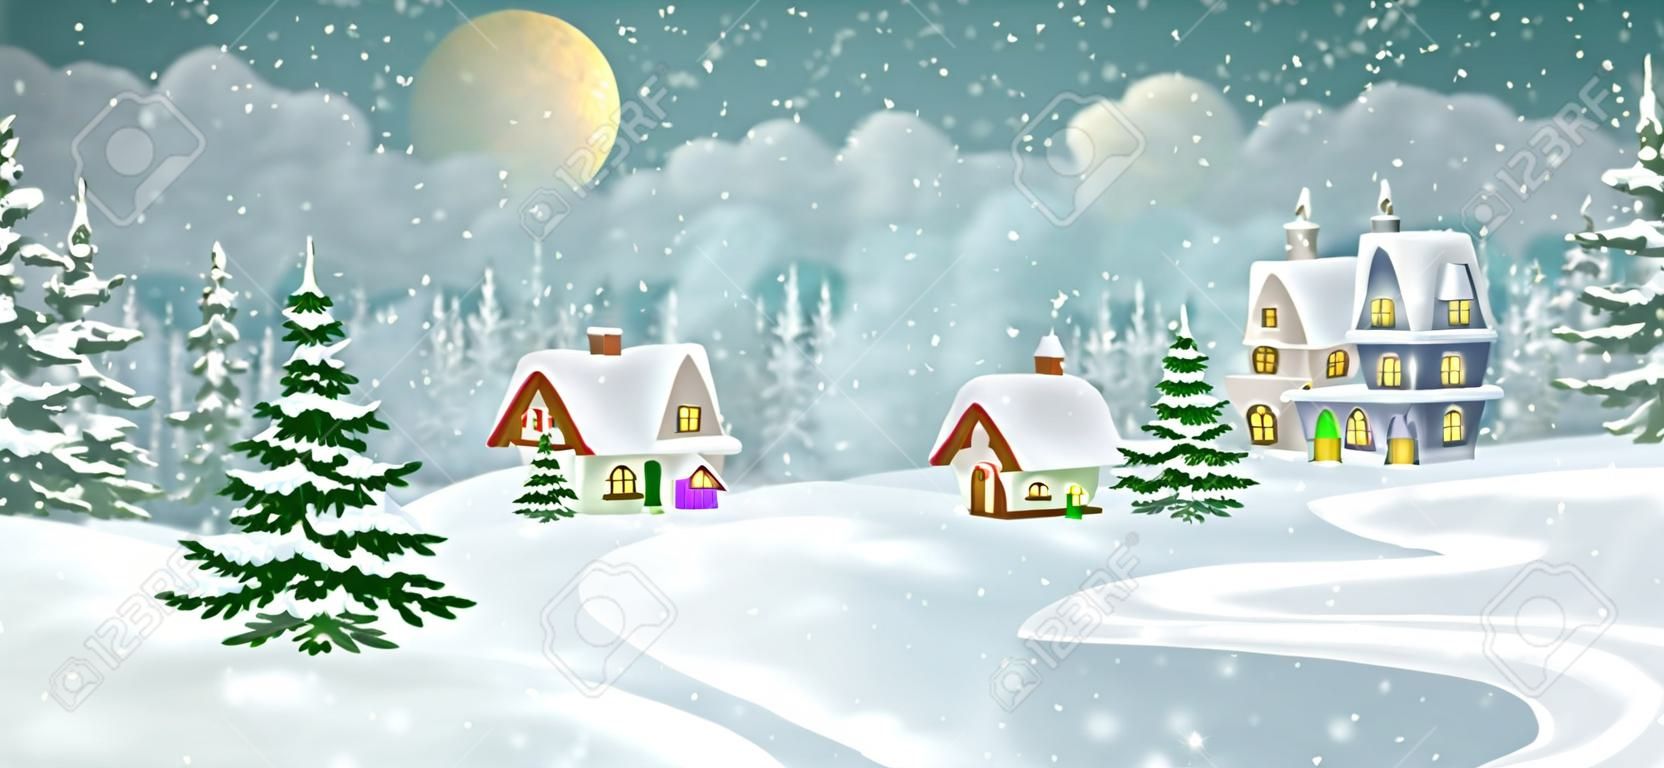 冬天與松樹林的村莊風景。小的童話般的房子被雪覆蓋著。